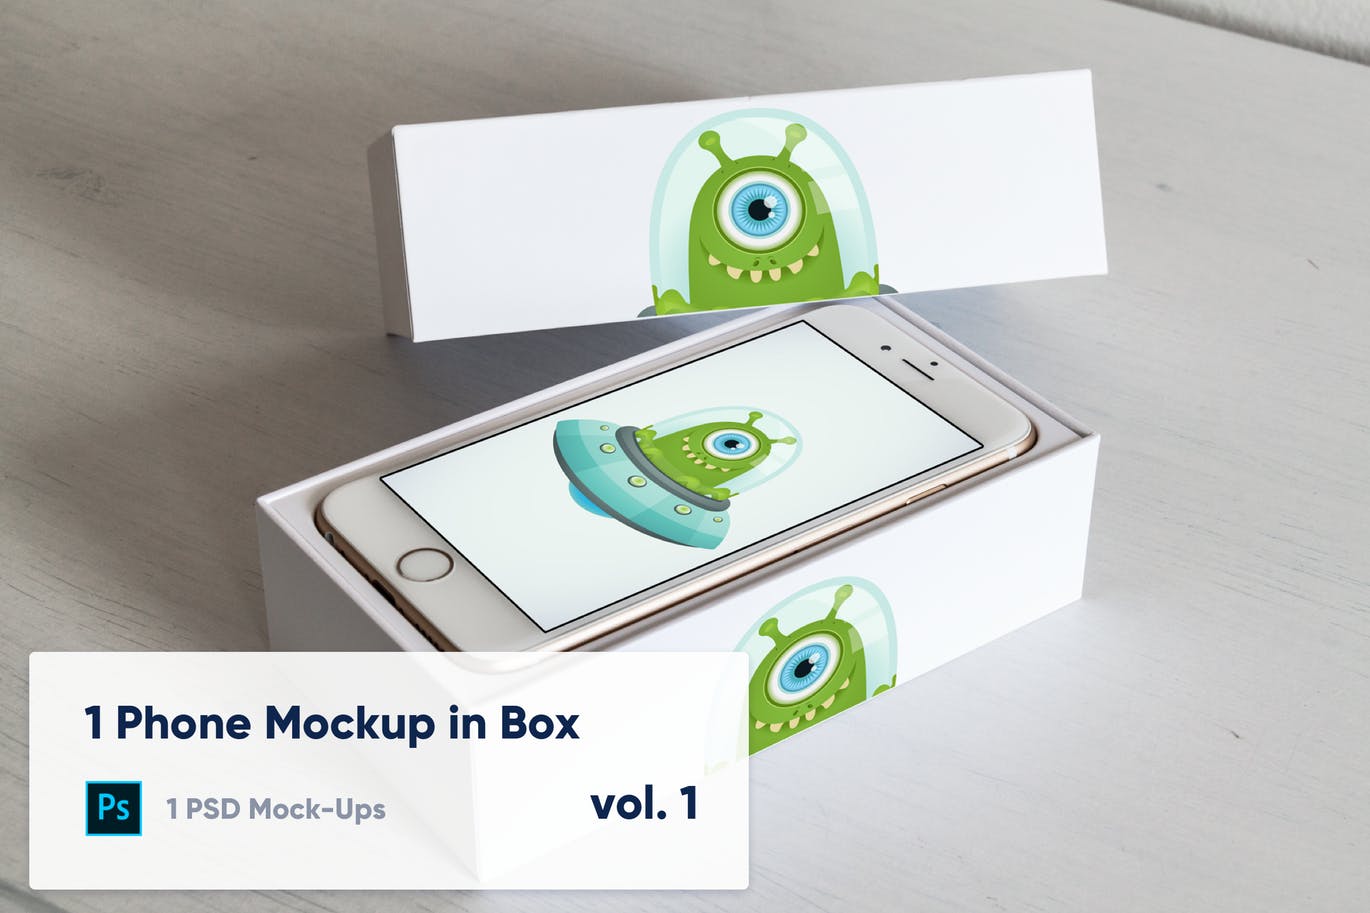 实体键盘iPhone手机开箱演示大洋岛精选样机模板v1 1 Phone Mockup in Paper Box – Vol. 1插图